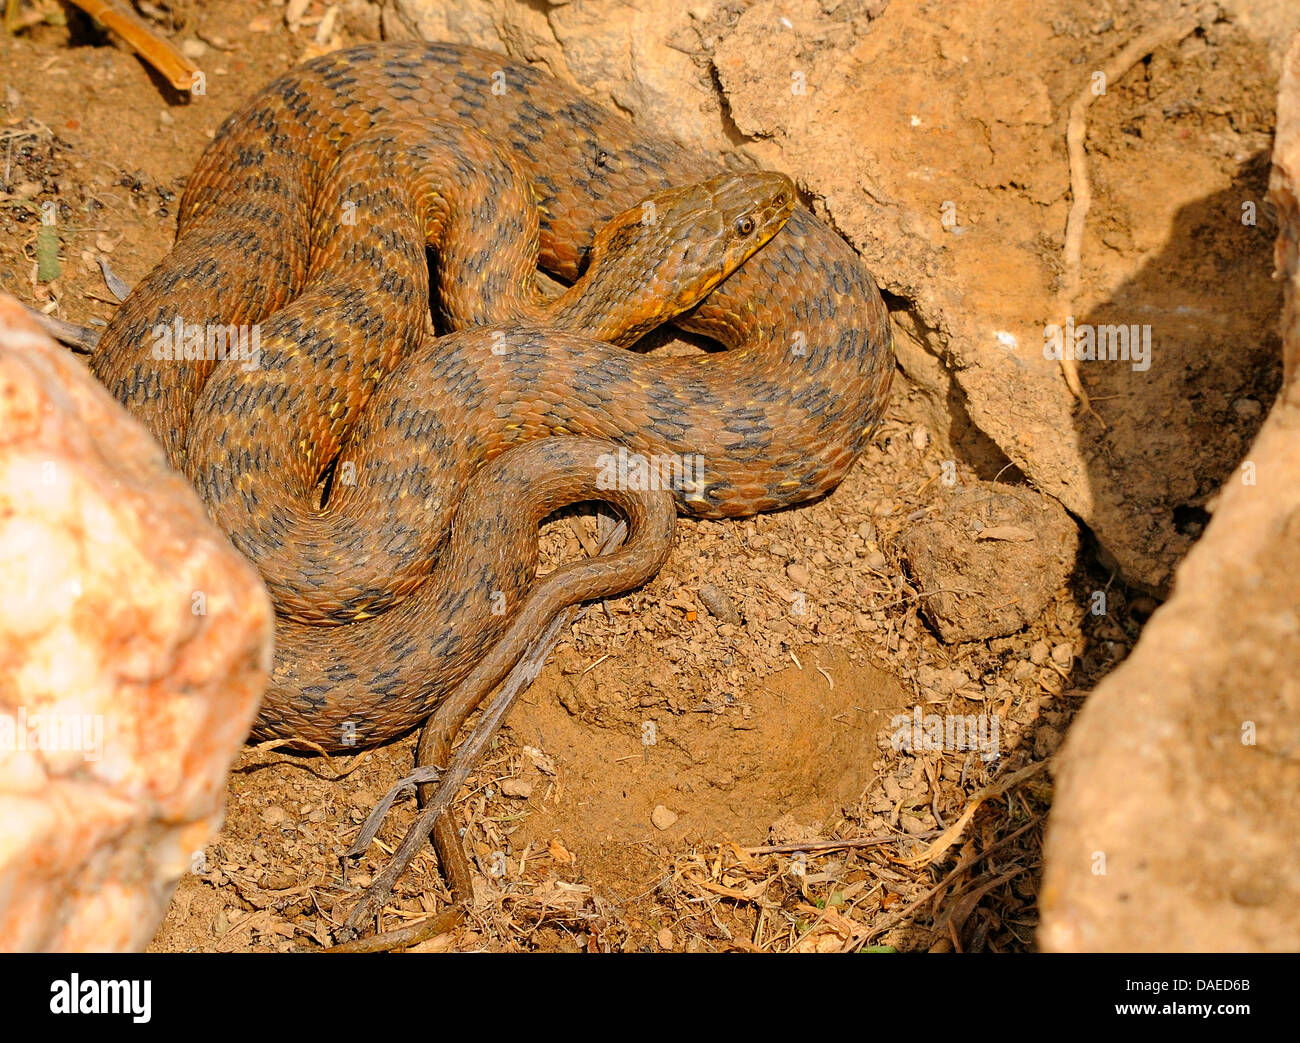 Viperine snake viperine grass Snake (Natrix maura), enroulés sur le sol, l'Espagne, l'Estrémadure Banque D'Images